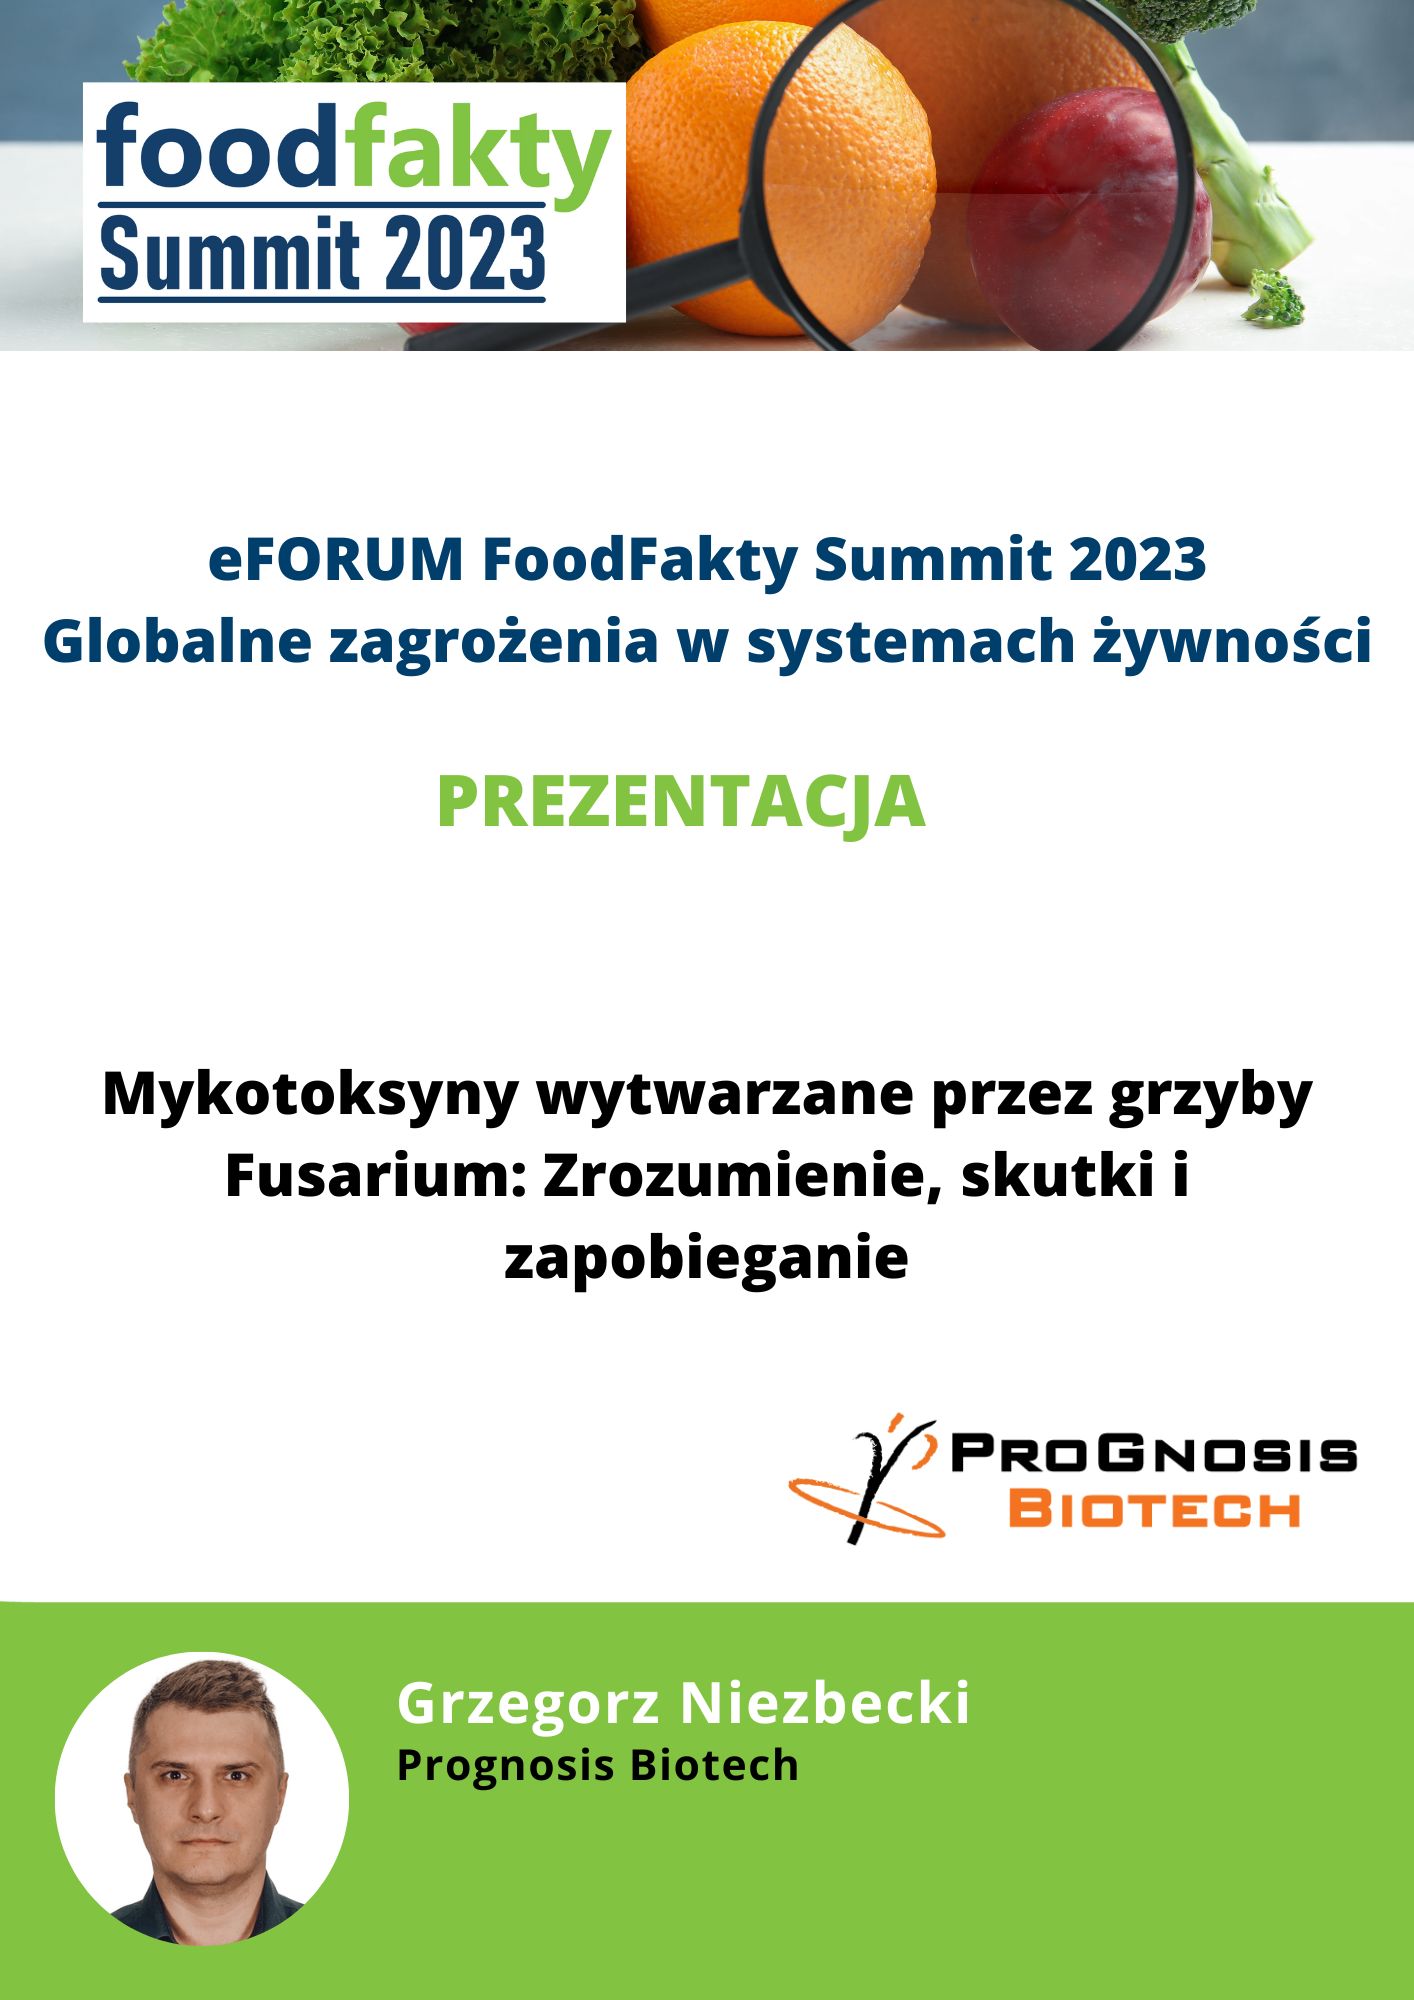 FoodFakty Summit Globalne i rosnące zagrożenia w systemach żywności - prezentacja Prognosis Biotech